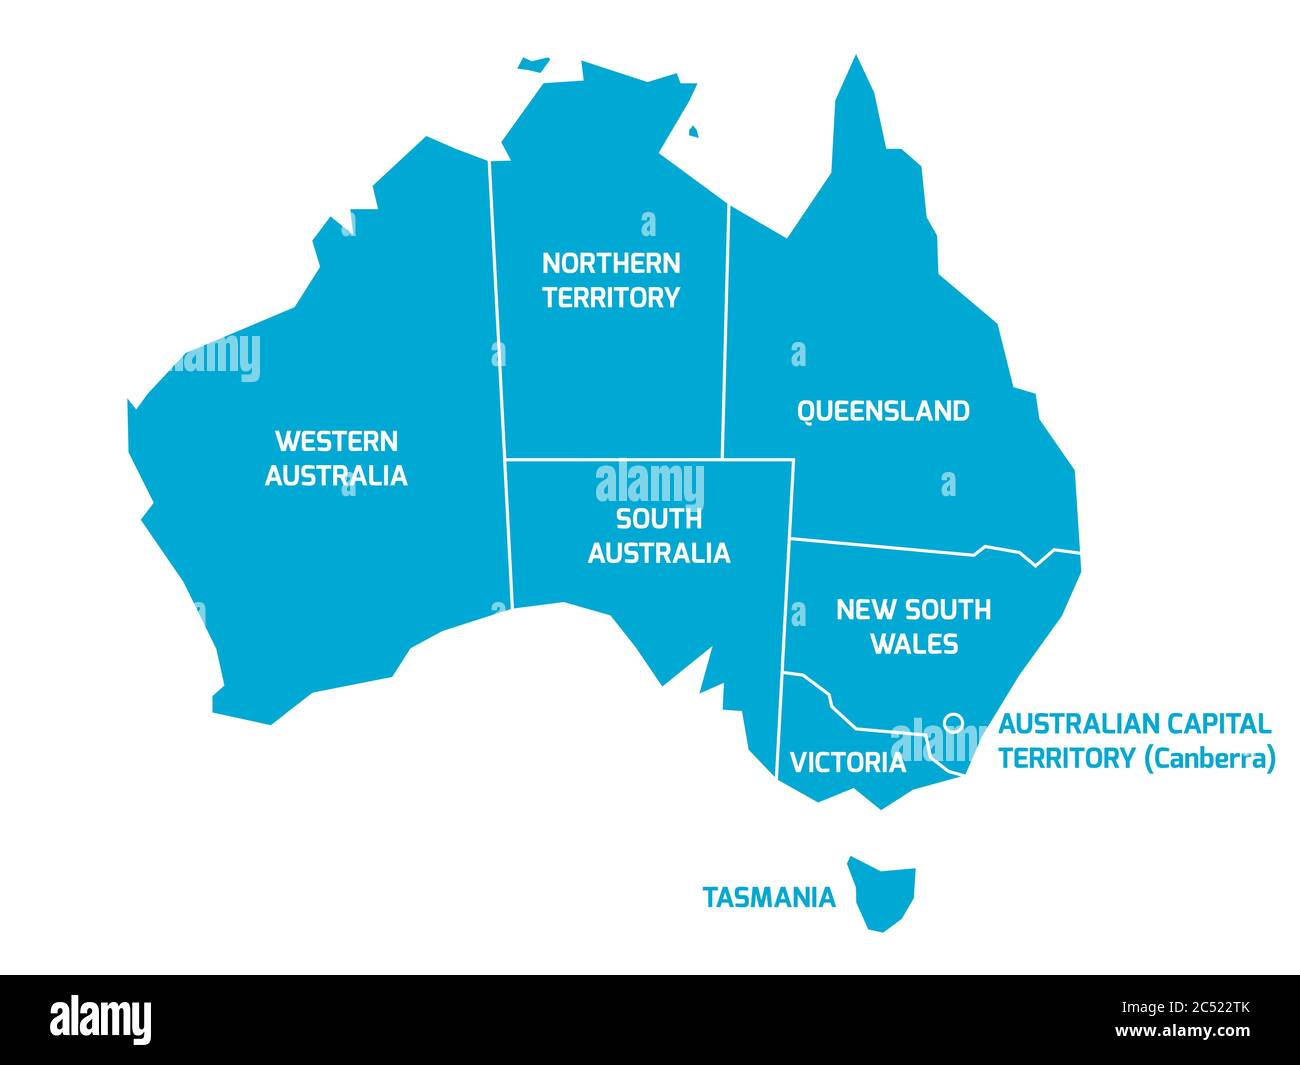 Vereinfachte Karte von Australien in Staaten und Territorien unterteilt. Blaue flache Karte mit weißen Rändern und Etiketten. Stock Vektor